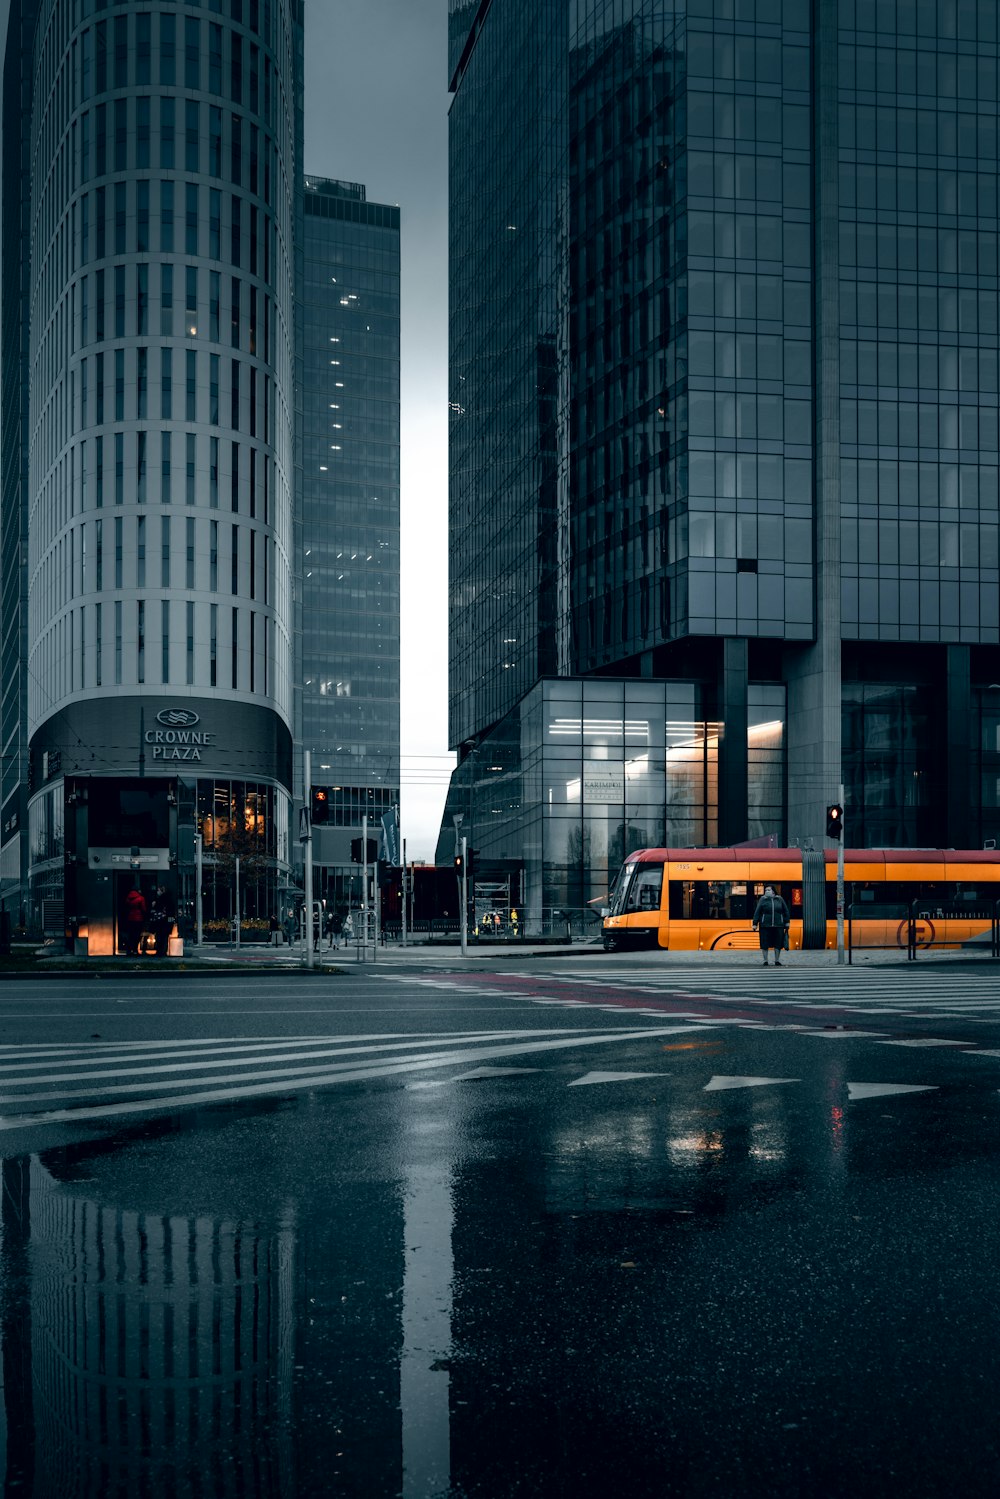 Gelber Bus tagsüber auf der Straße in der Nähe von Hochhäusern